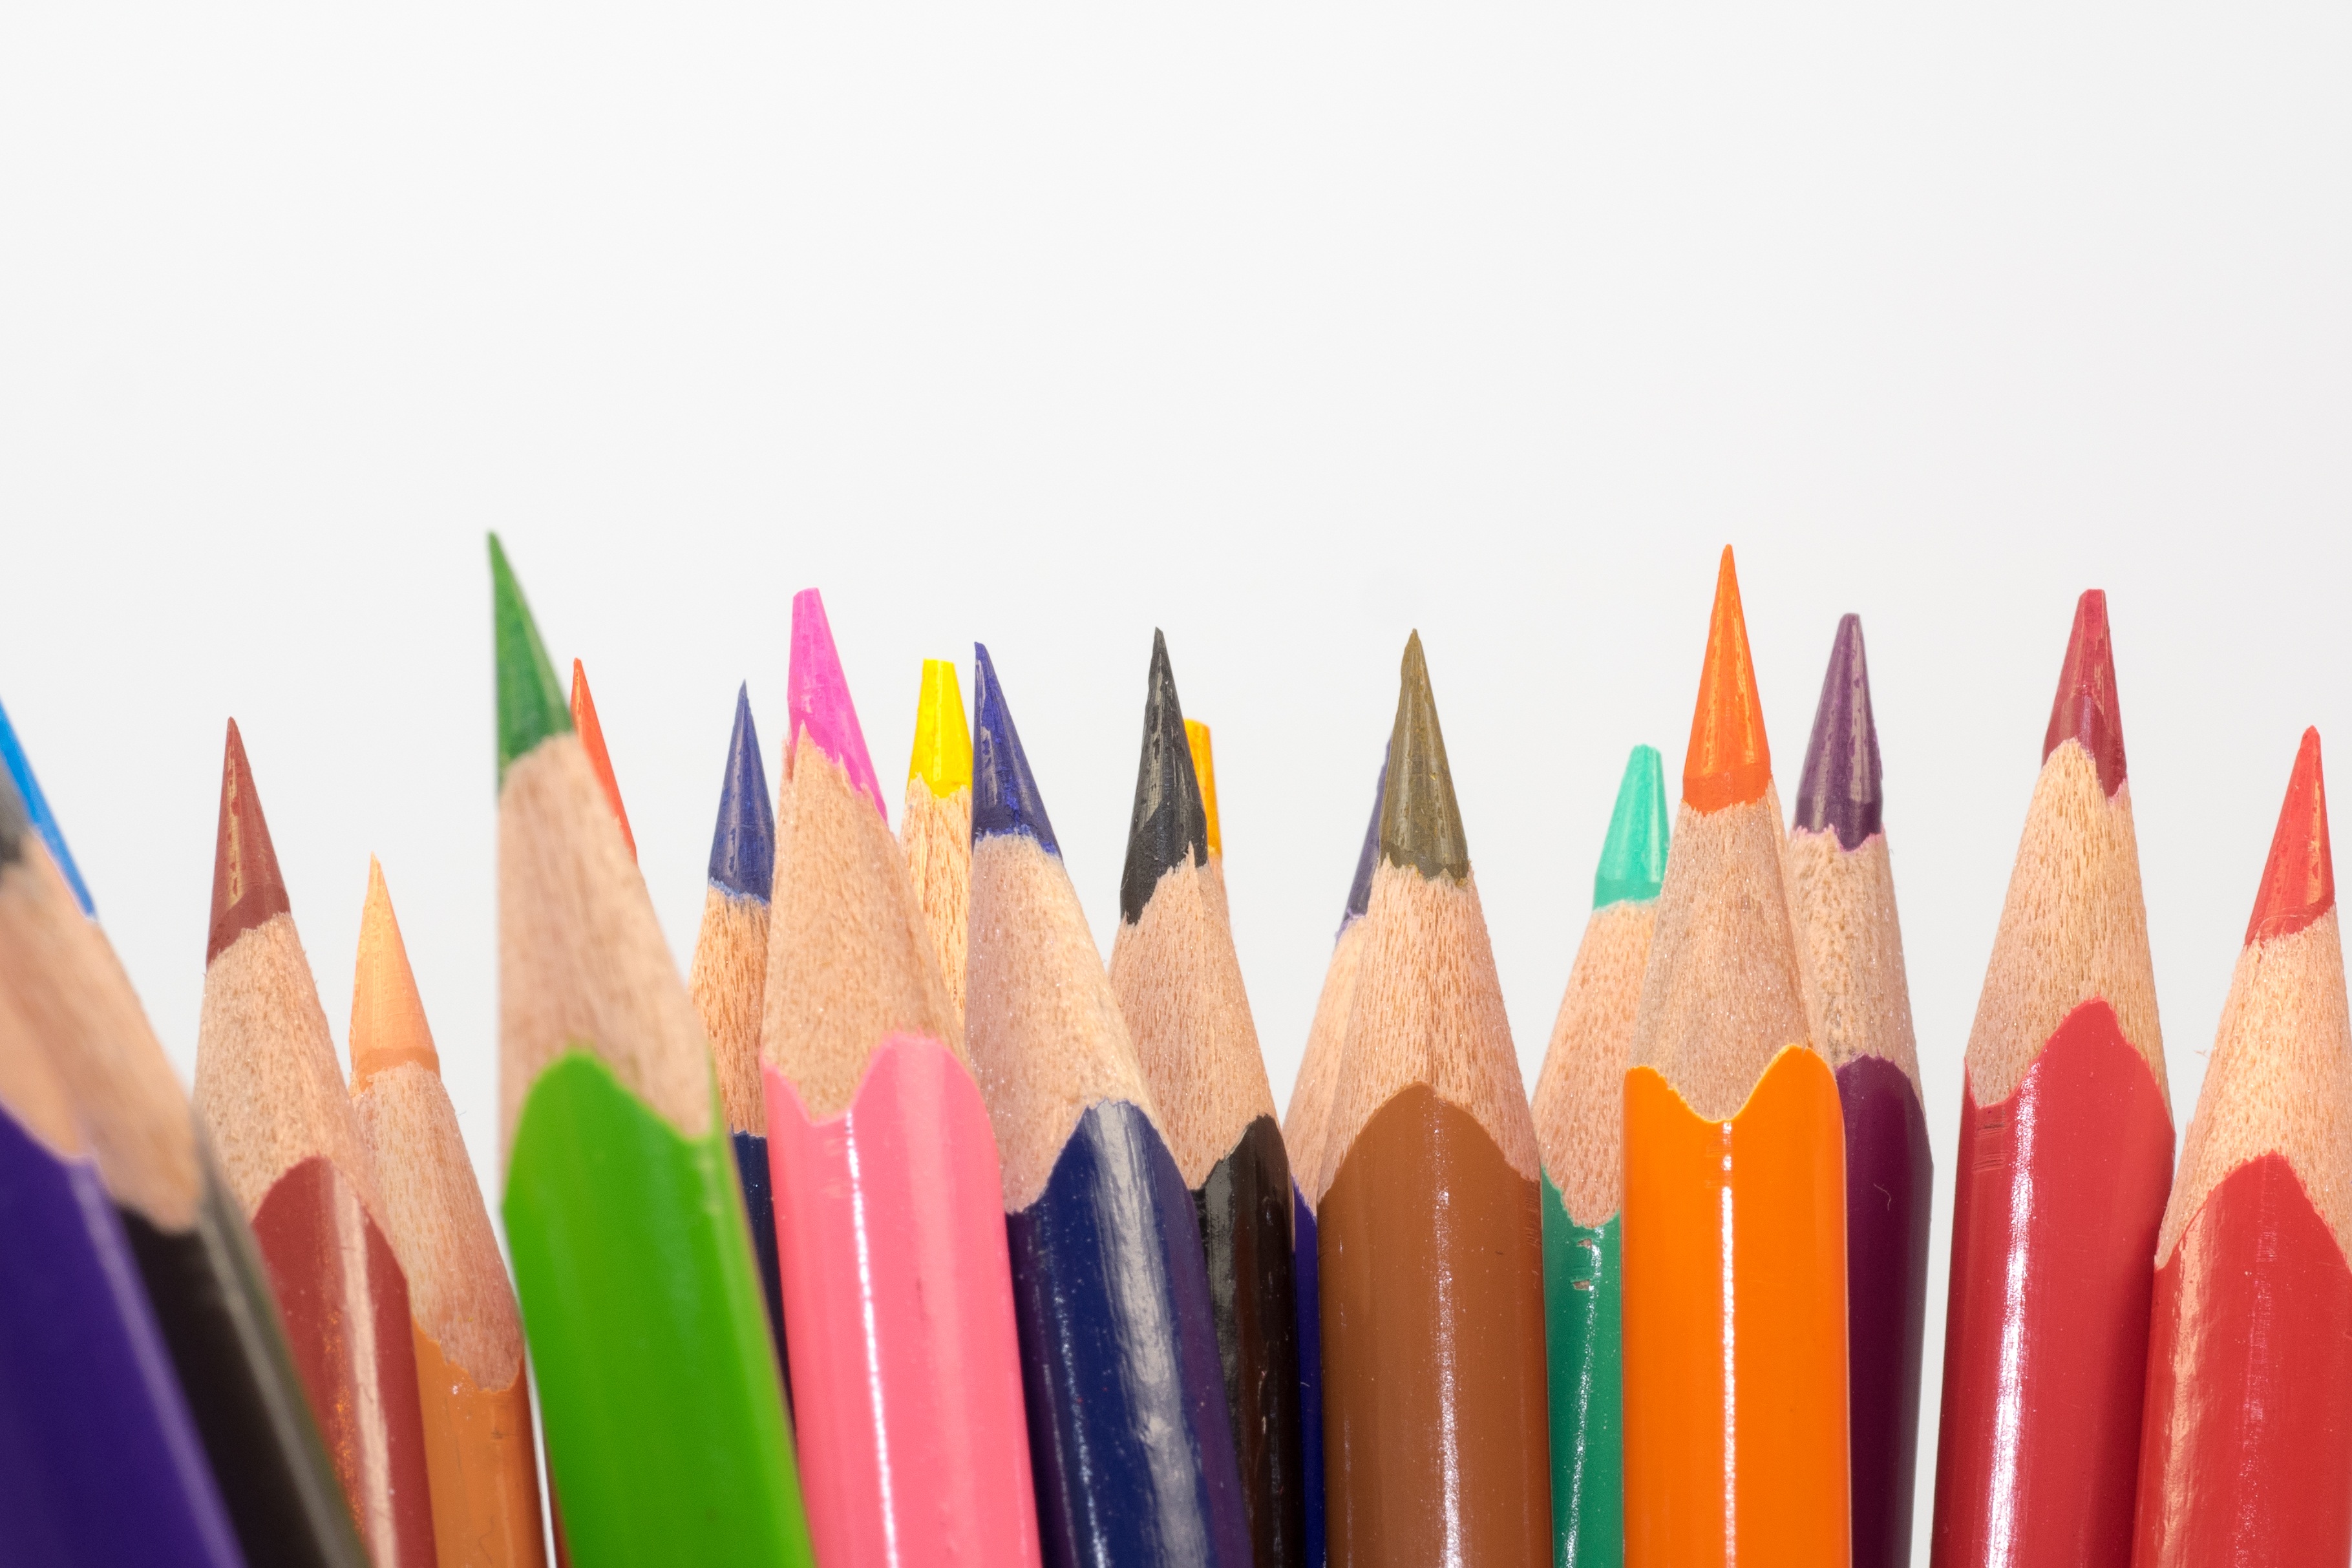 Sharp, multi-colored pencils